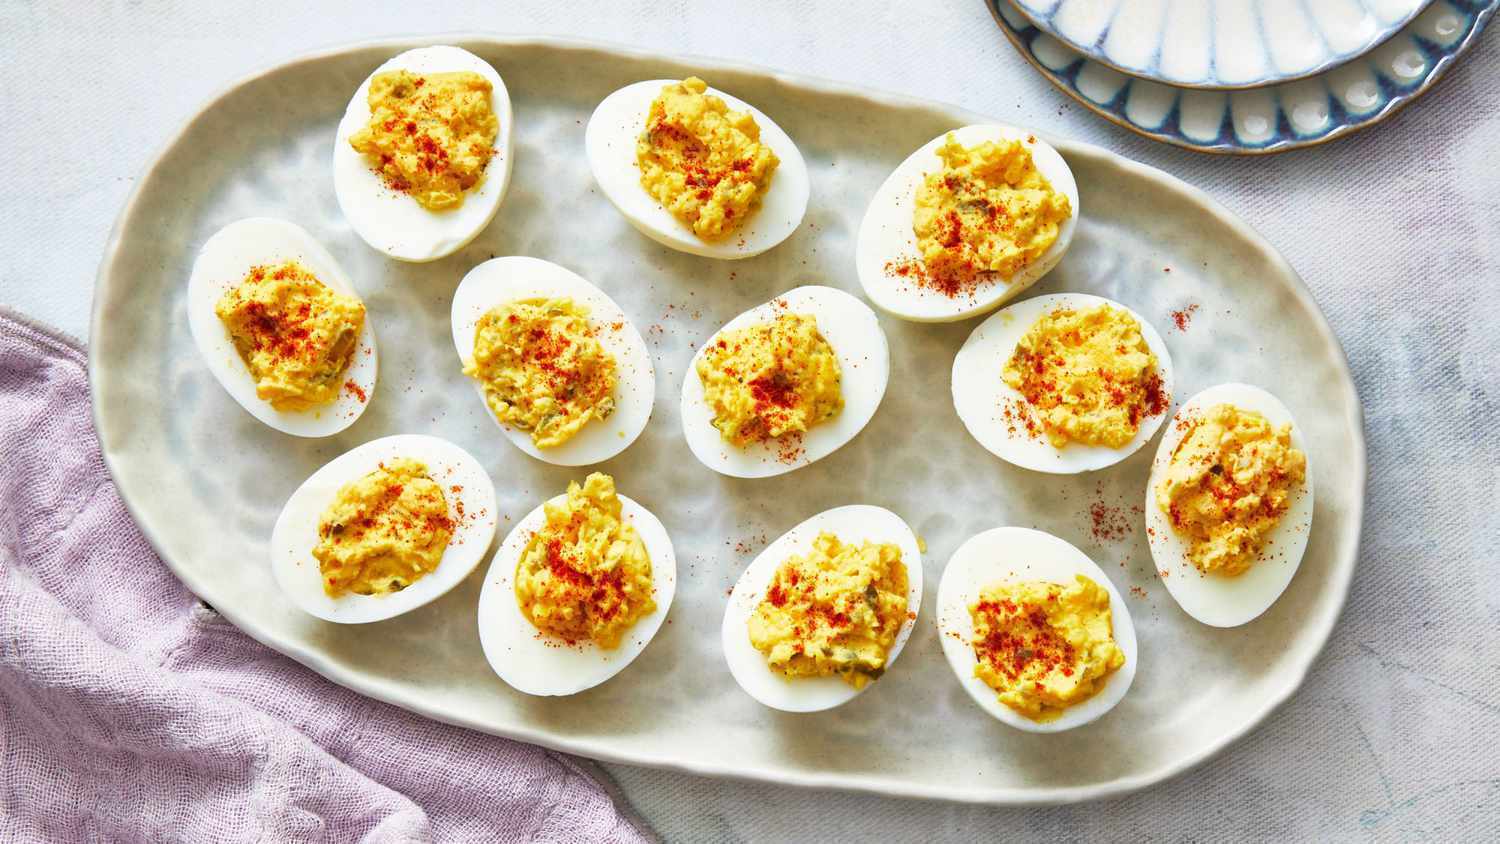 Почему яйца плохо чистятся и становятся резиновыми: самые распространенные ошибки в приготовлении